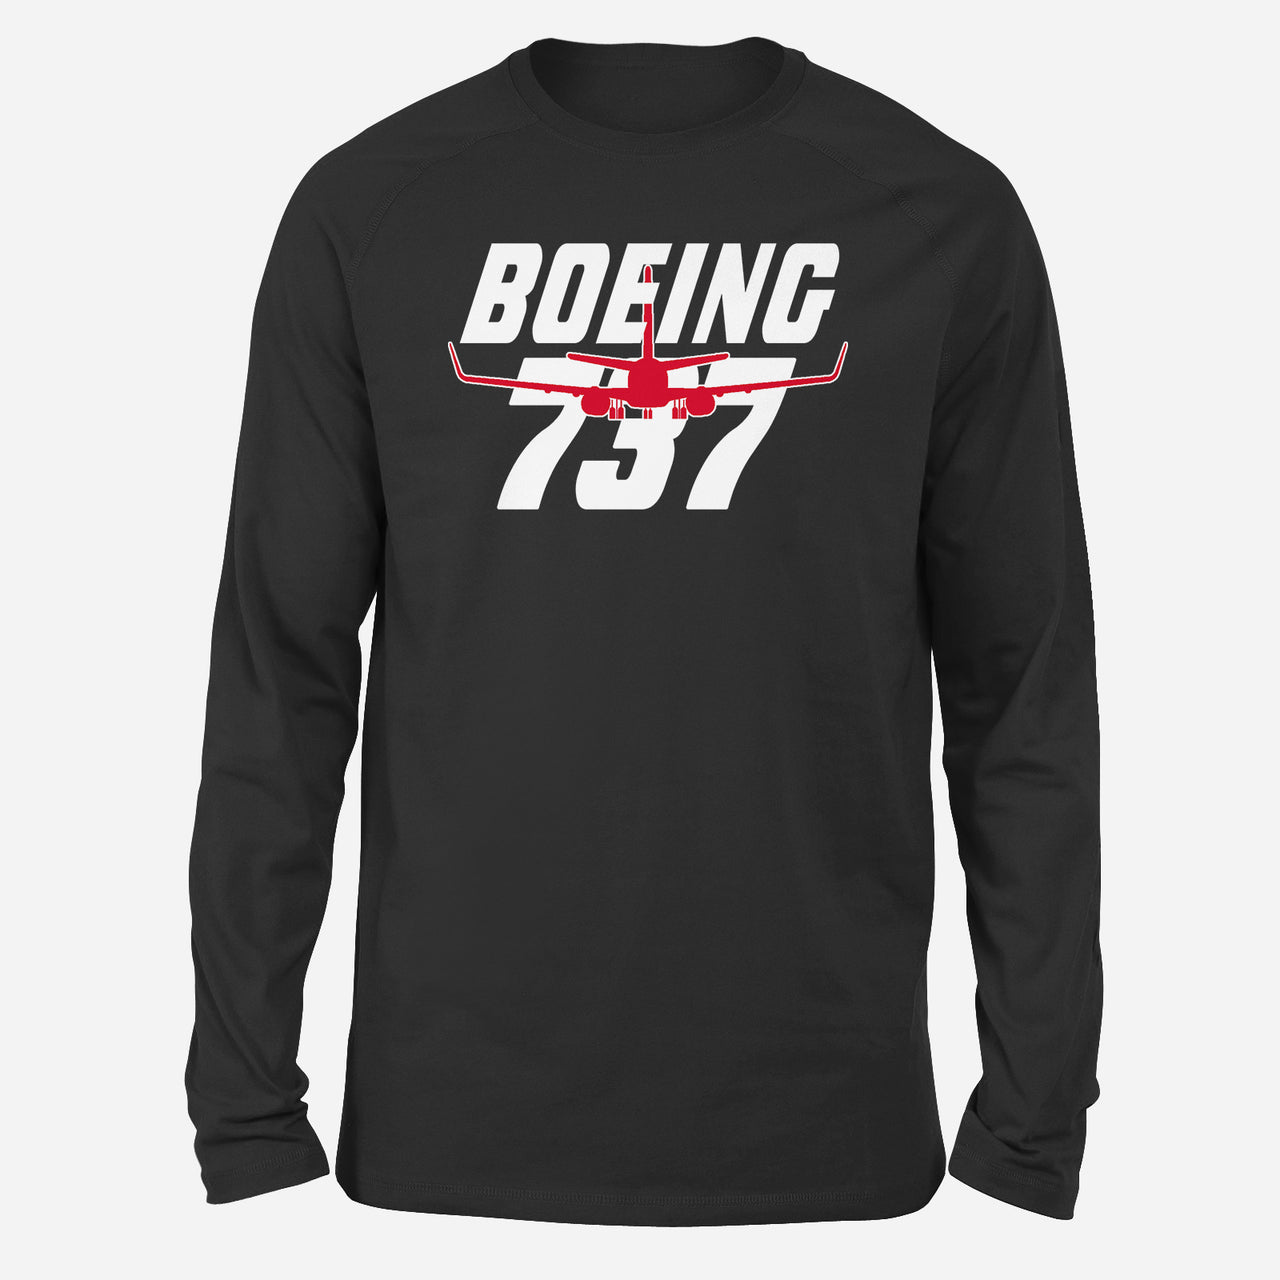 Amazing Boeing 737 Designed Long-Sleeve T-Shirts